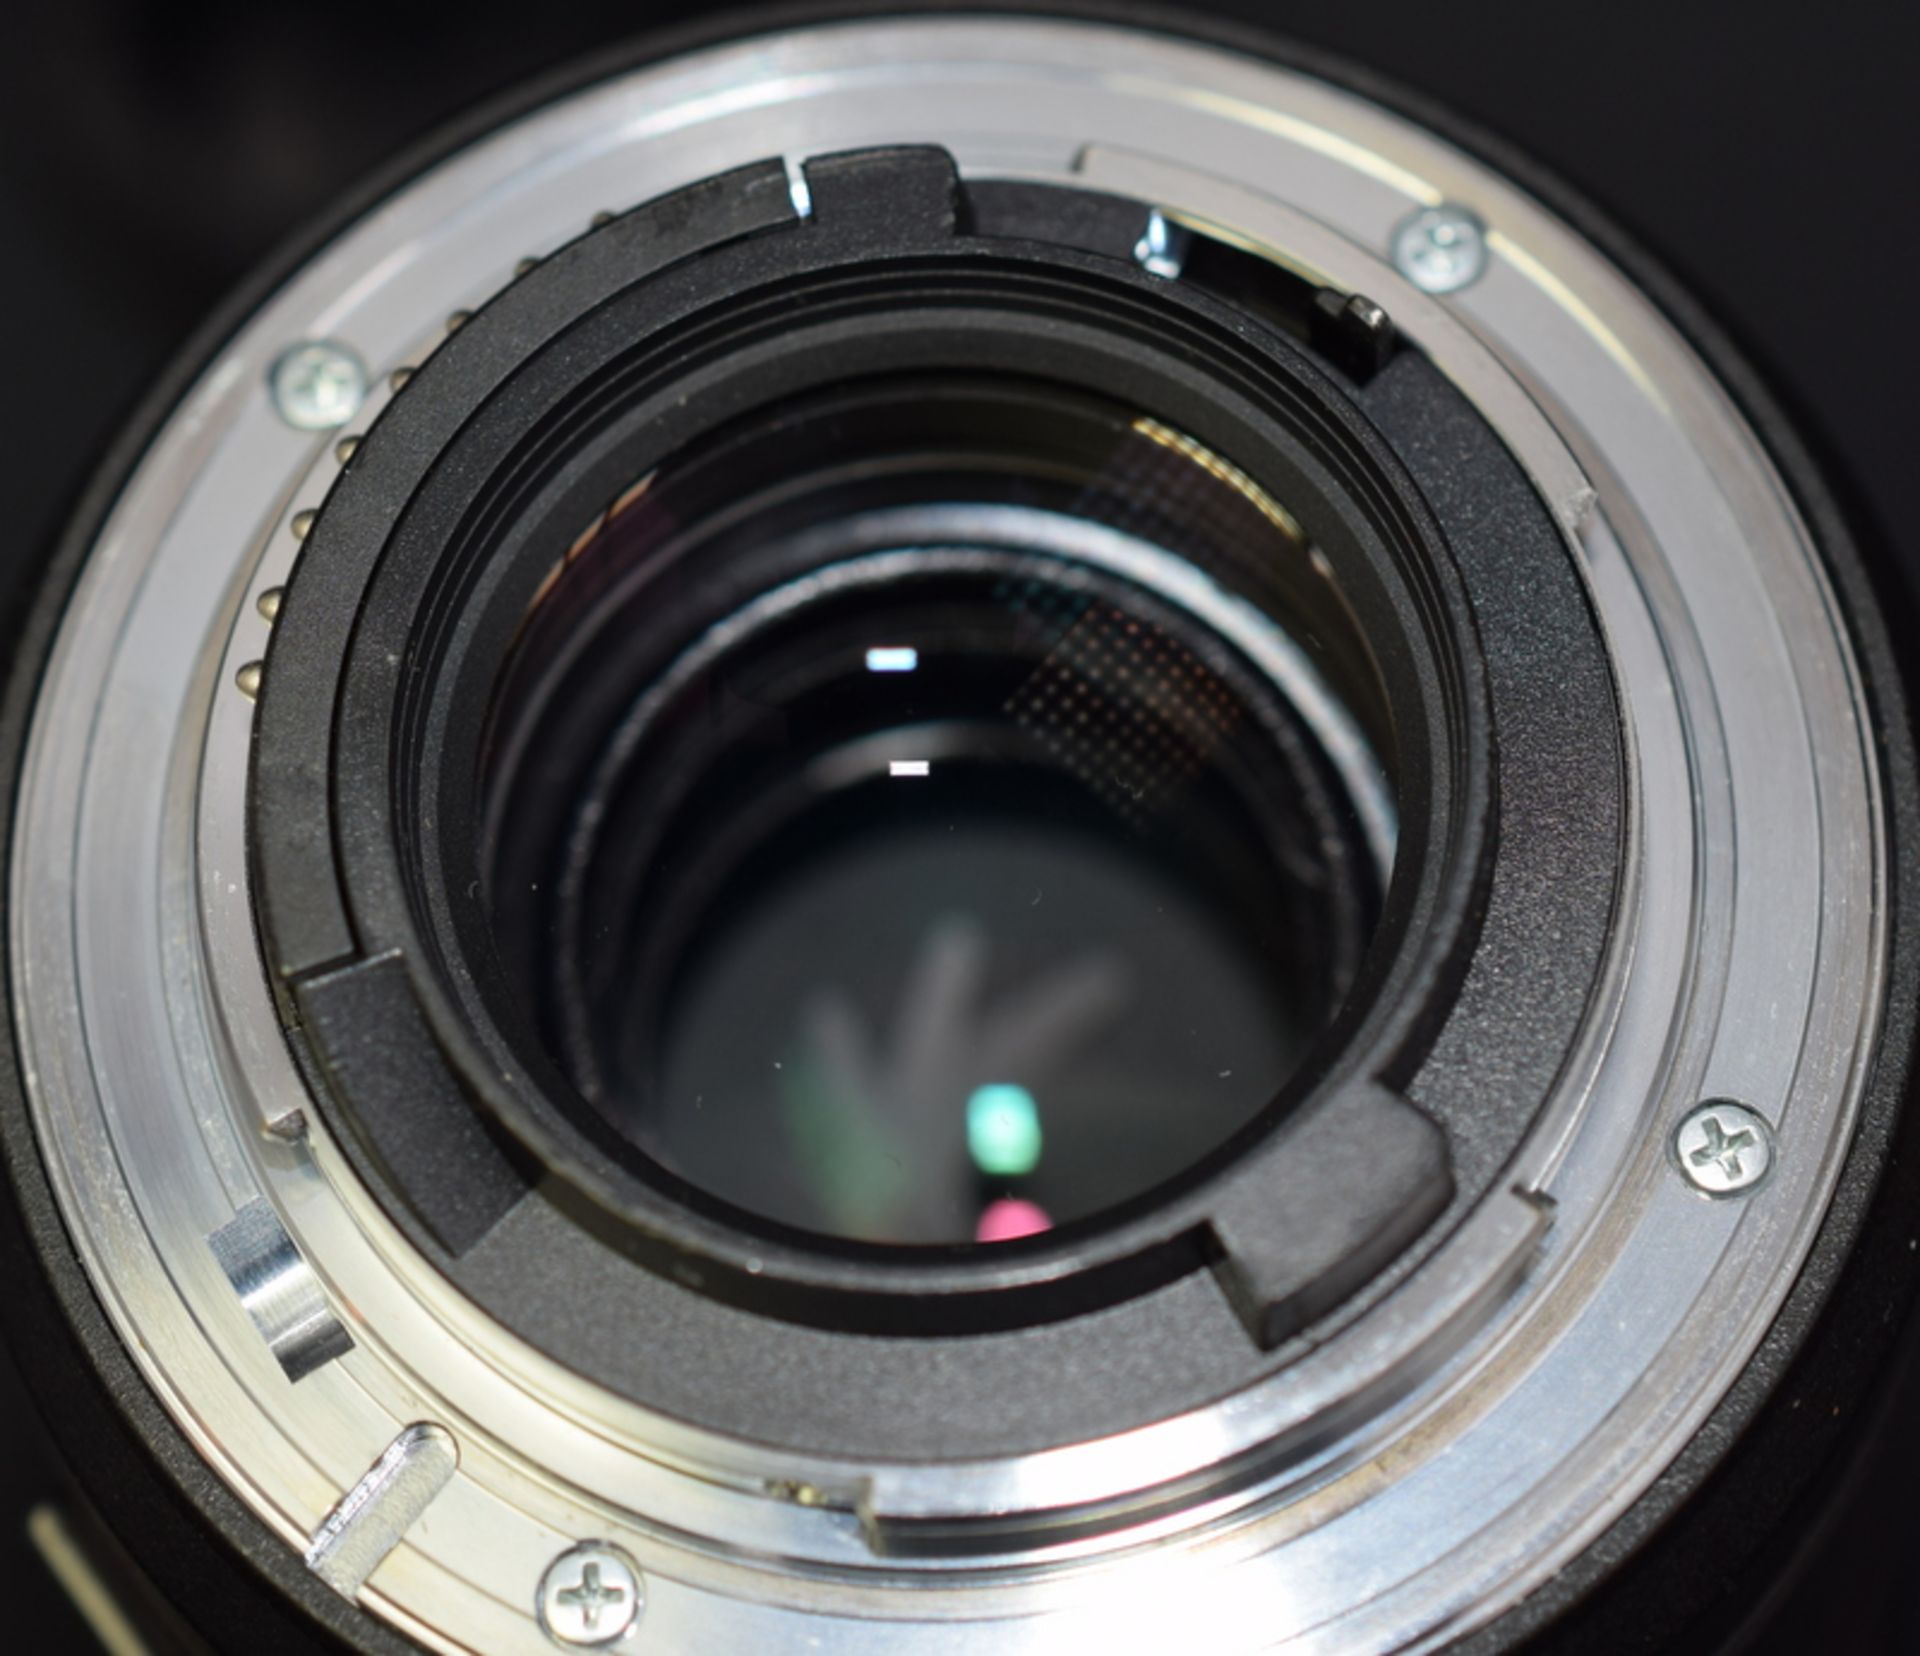 Tamron SP AF 90mm F/2.8 Di Macro 1:1 Lens - Nikon Fit - Image 4 of 5